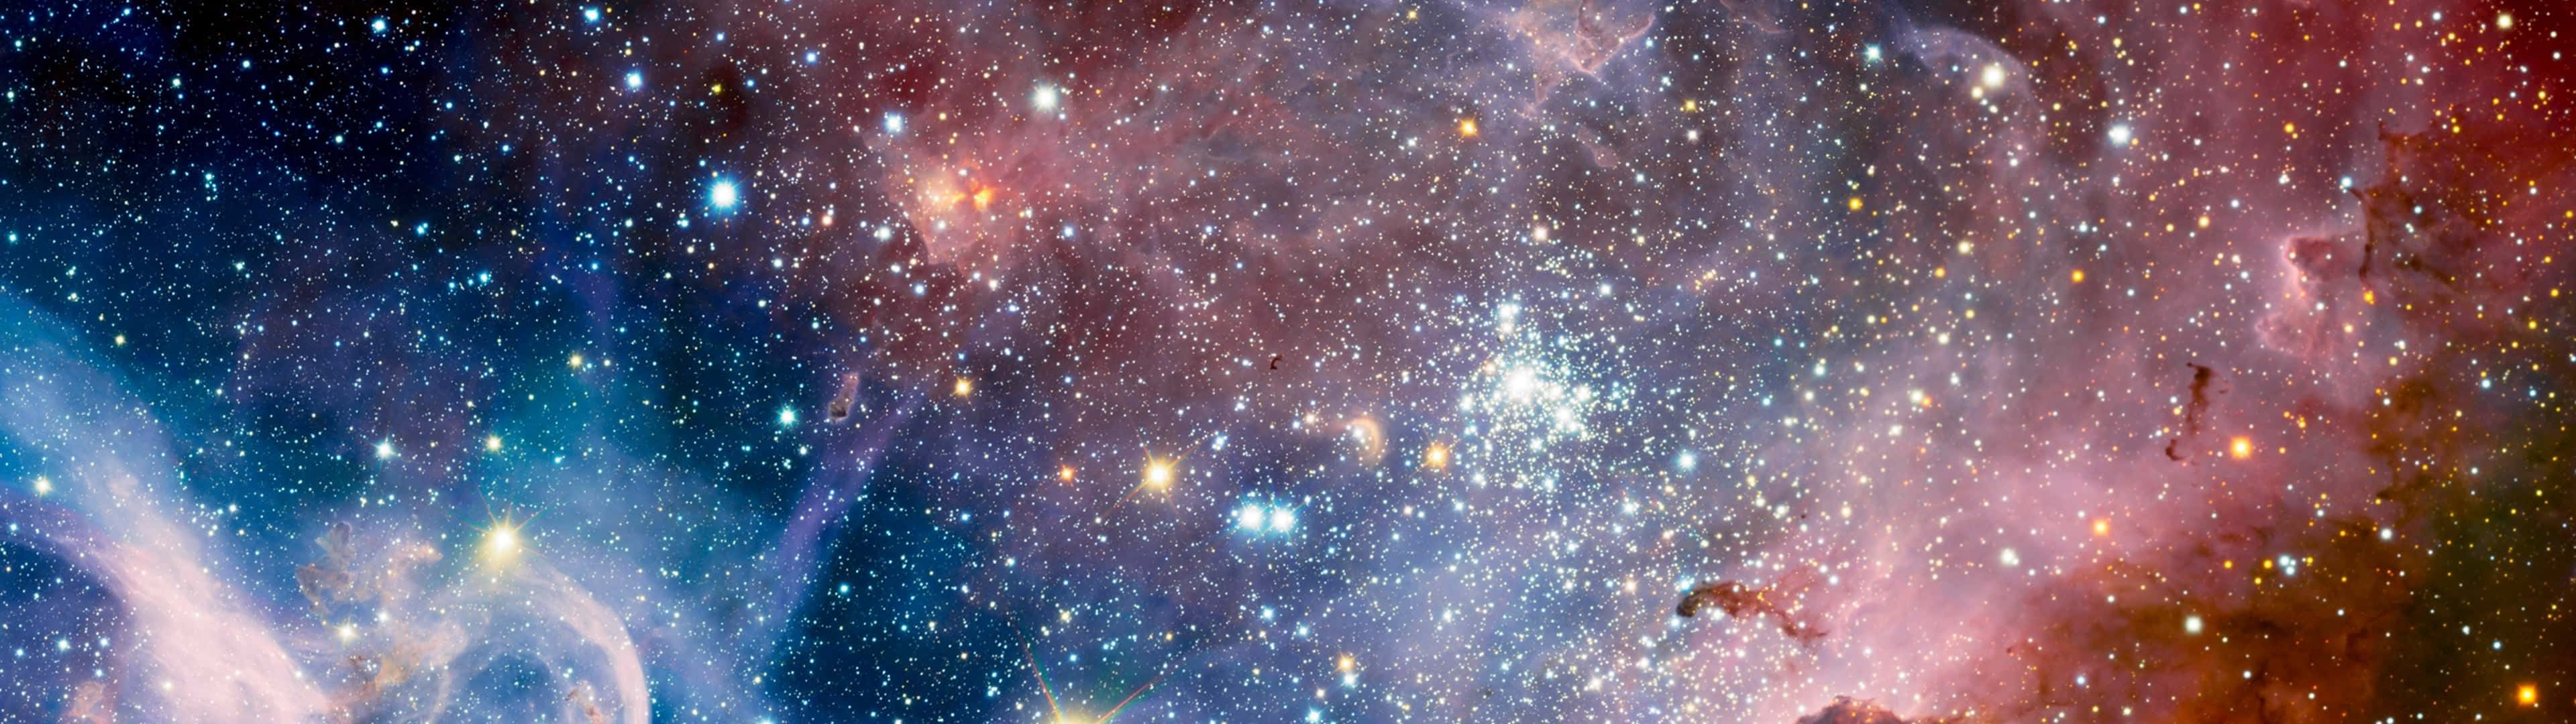 Immaginedi Una Galassia Rossa E Blu Con Risoluzione 3840x1080.